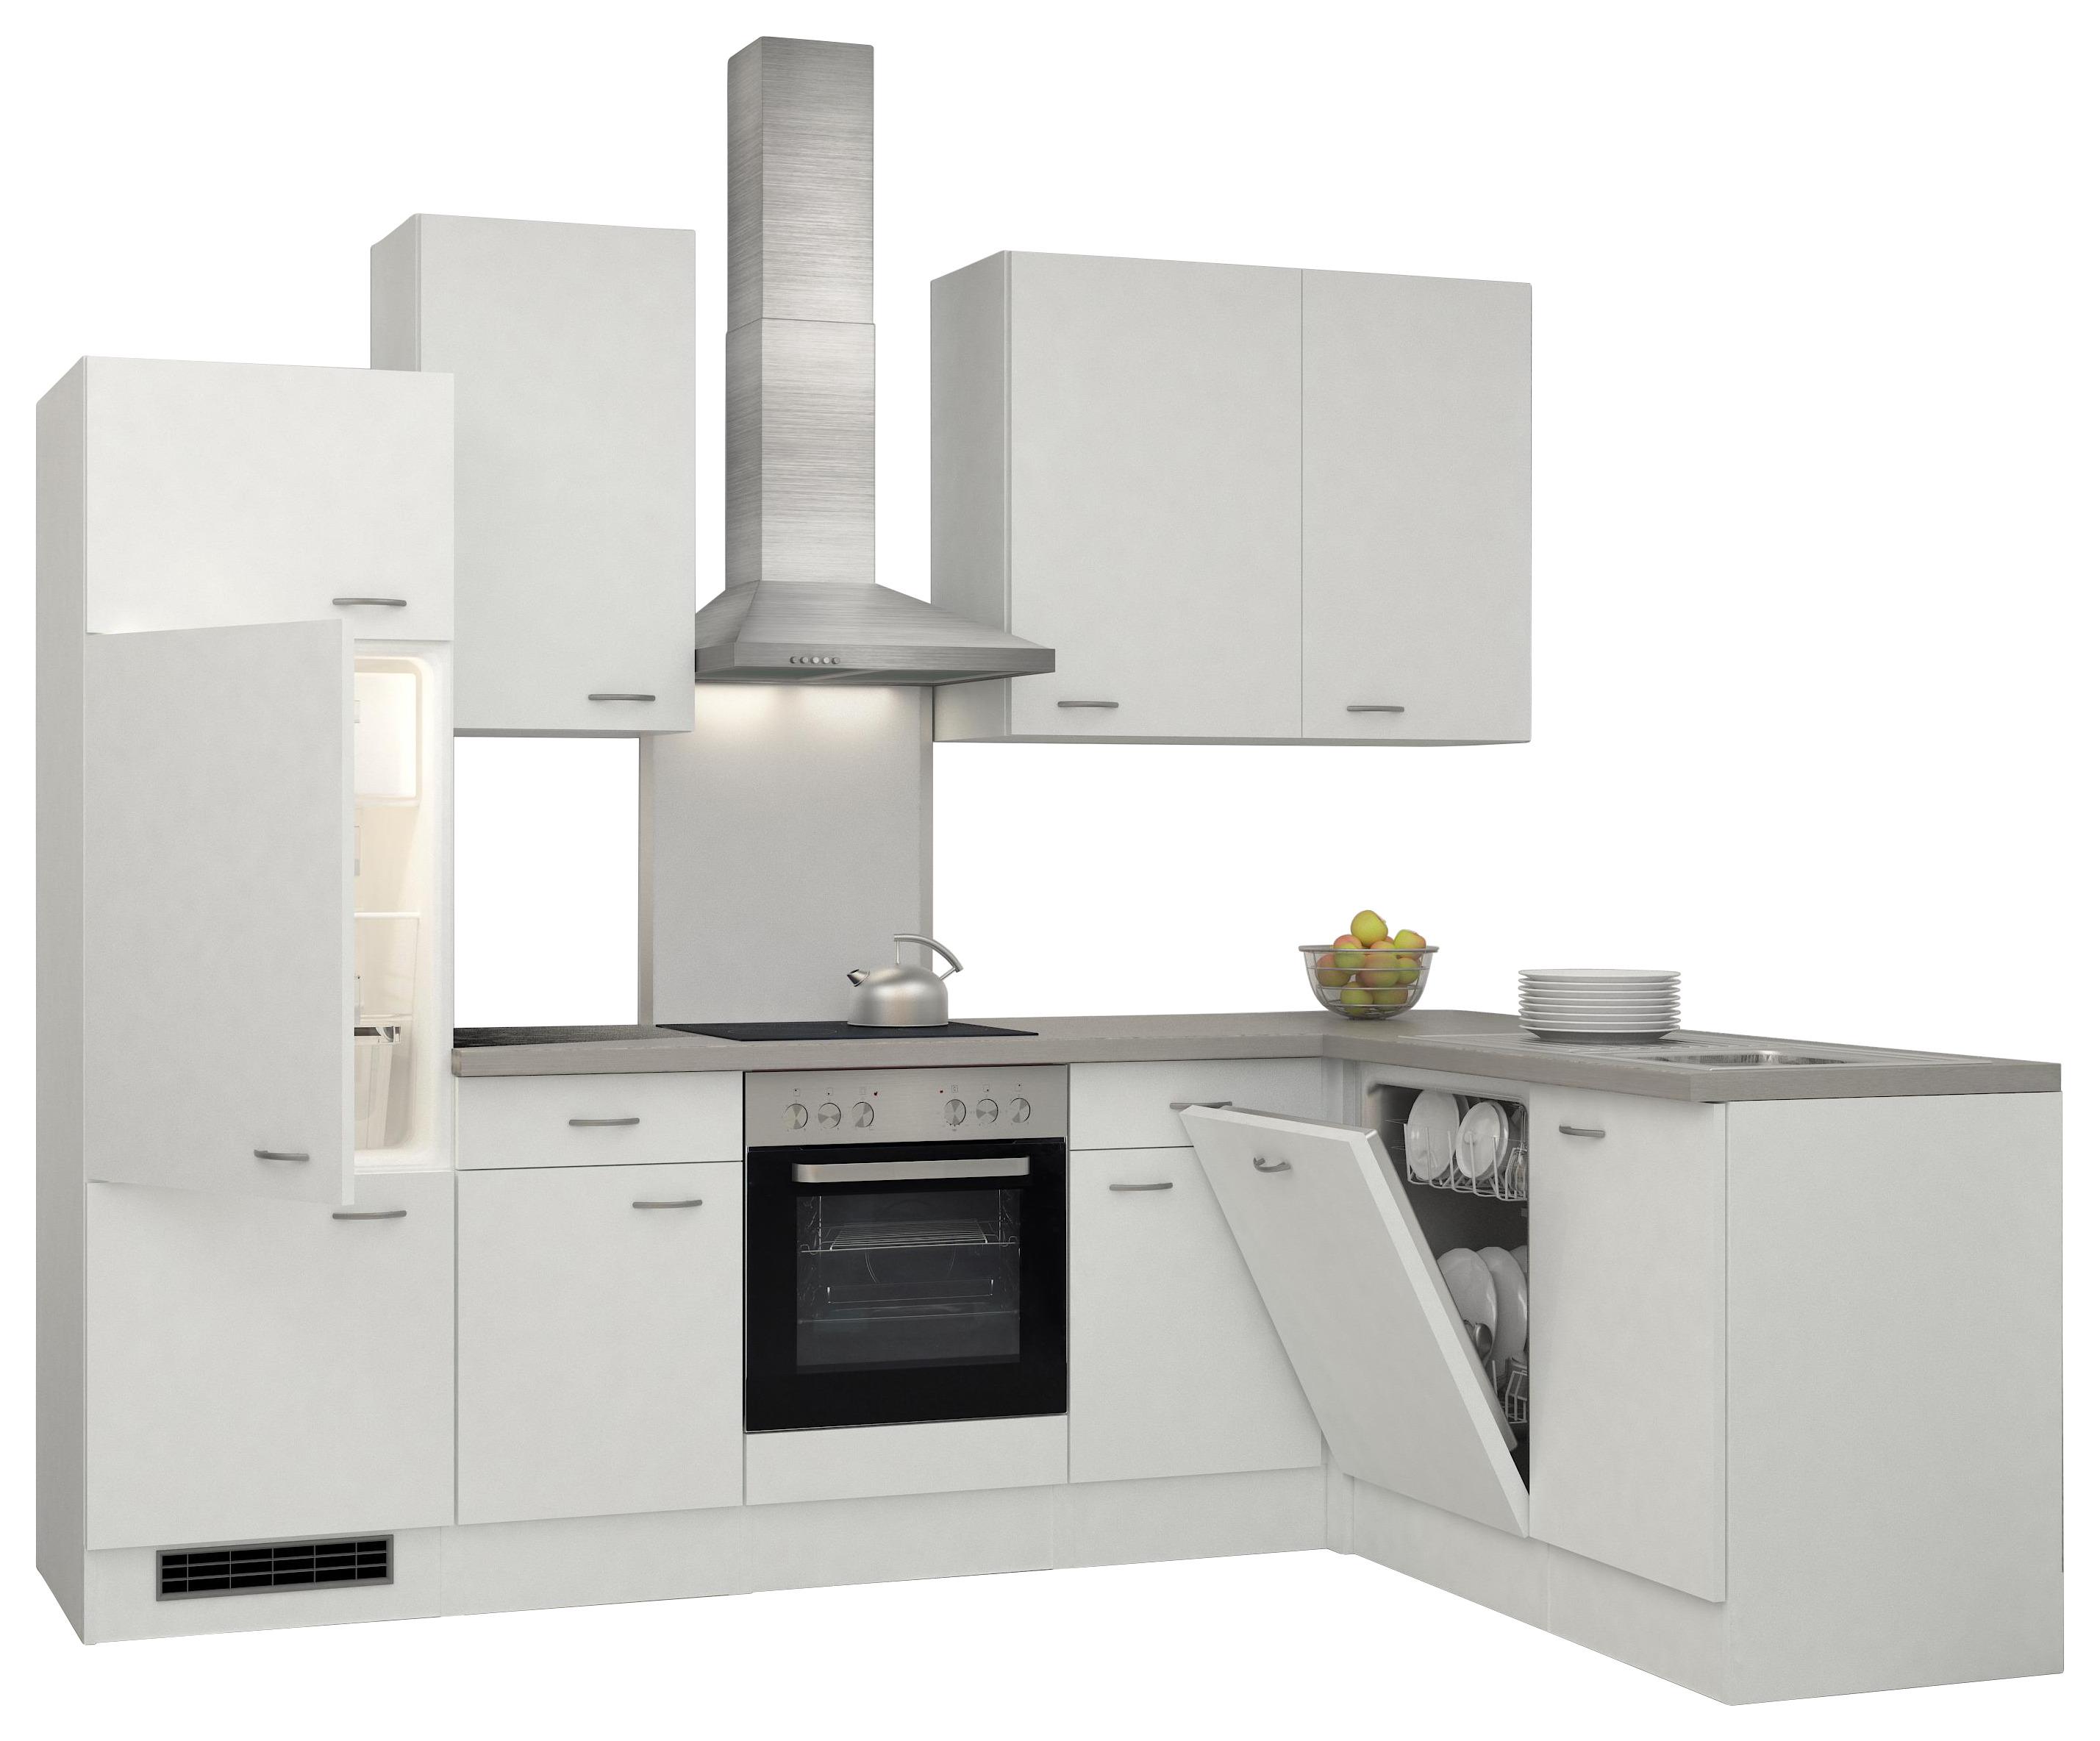 Eckküche Wito mit Geräten 280x170 cm Grau/Weiß Elegant - Hellgrau/Weiß, MODERN, Holzwerkstoff (280/170cm) - FlexWell